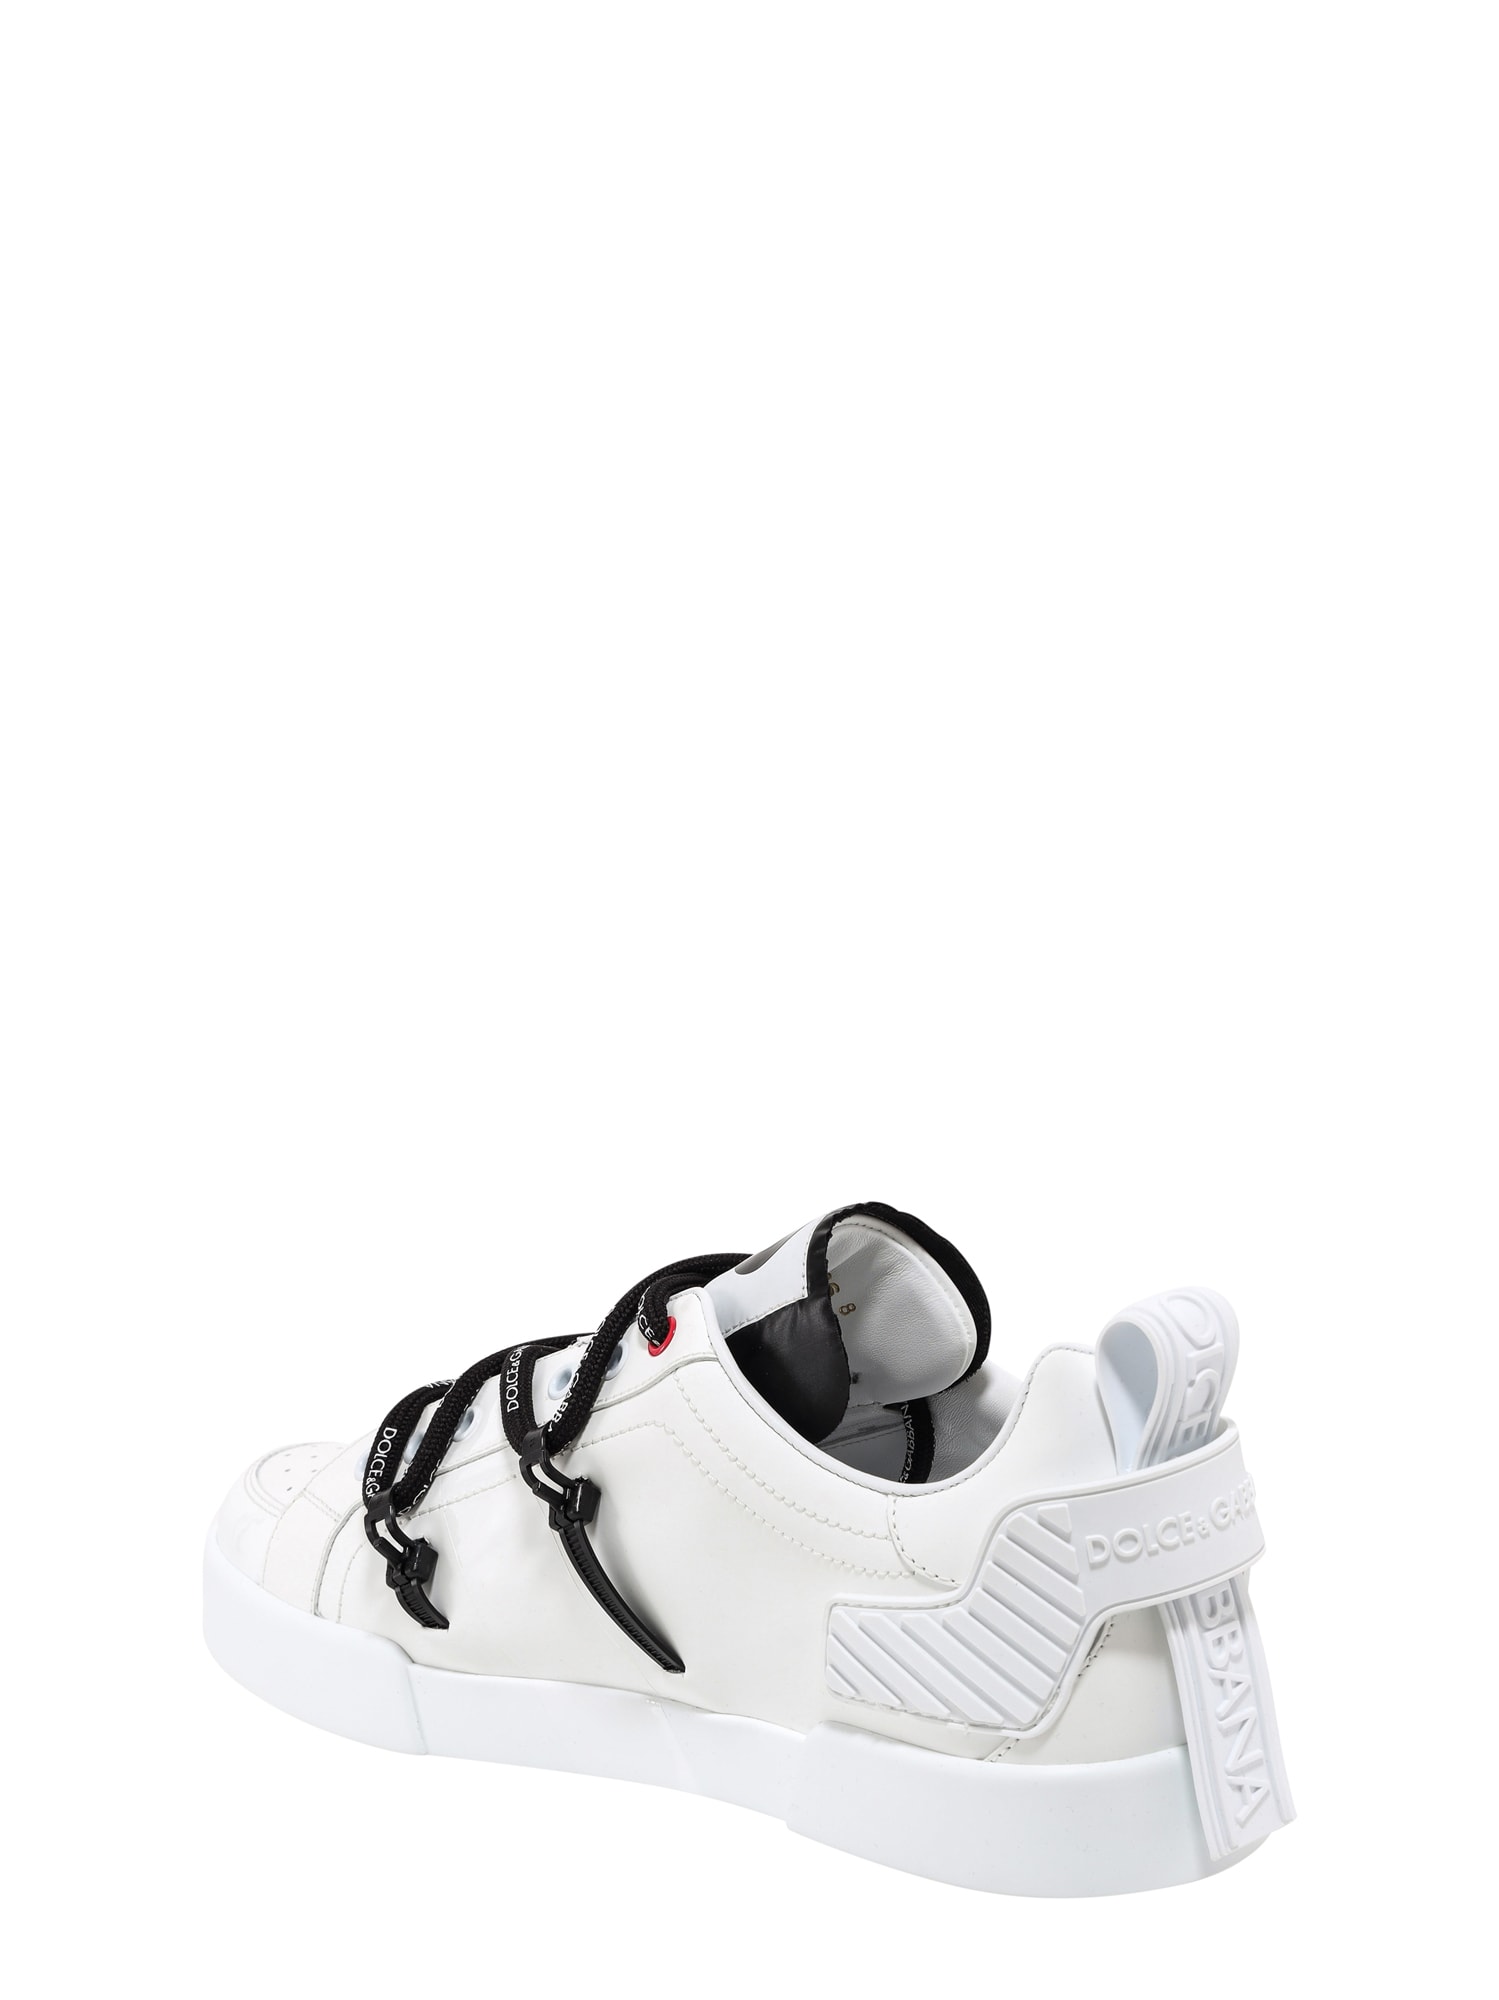 Shop Dolce & Gabbana Portofino Sneakers In Bianco/nero